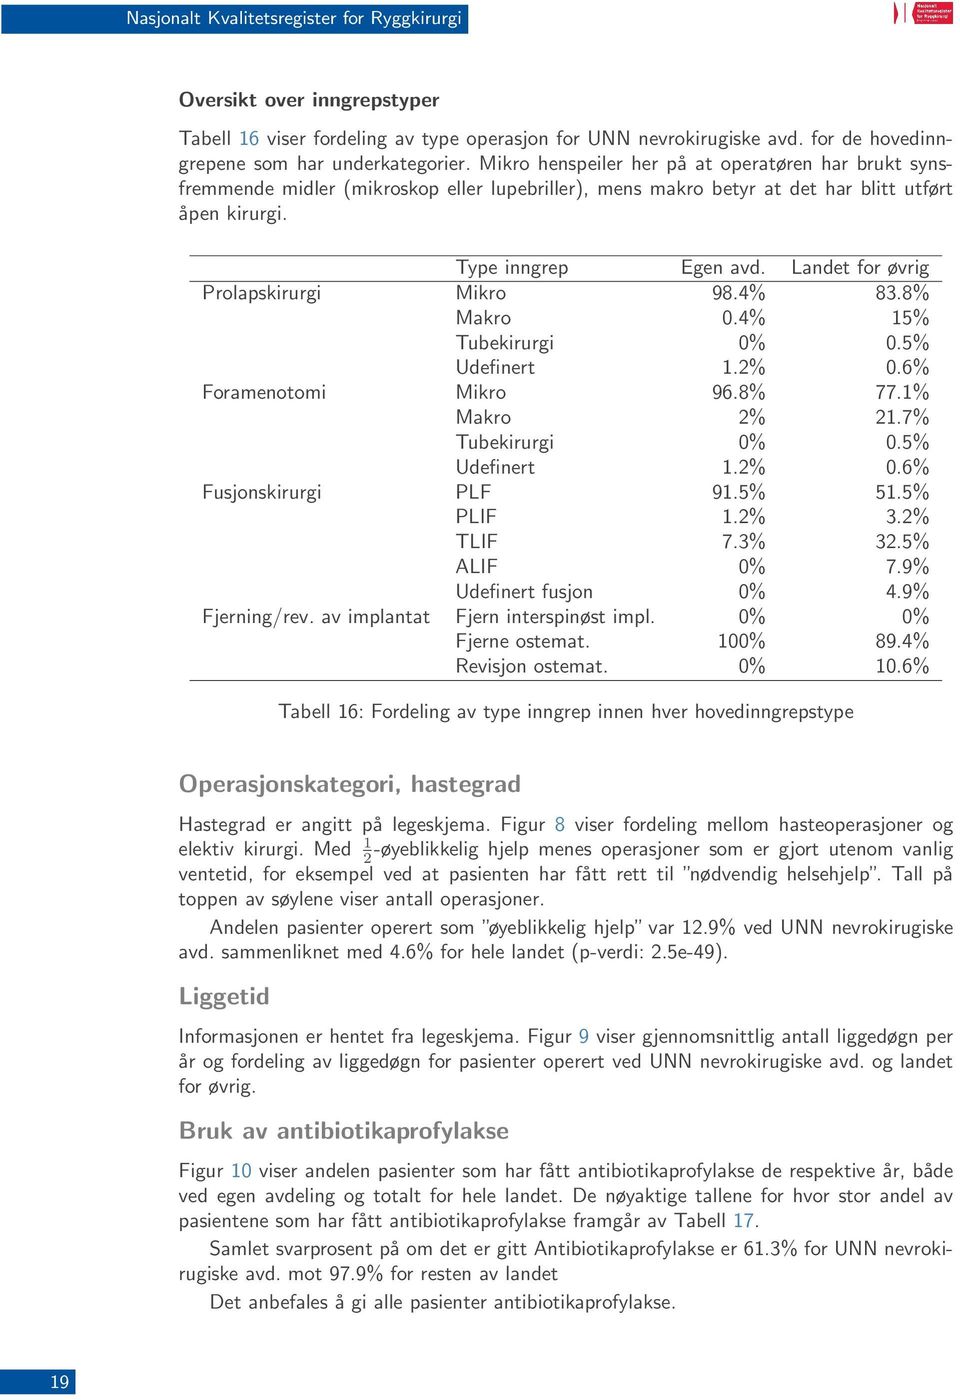 Landet for øvrig Prolapskirurgi Mikro 98.4% 83.8% Makro 0.4% 15% Tubekirurgi 0% 0.5% Udefinert 1.2% 0.6% Foramenotomi Mikro 96.8% 77.1% Makro 2% 21.7% Tubekirurgi 0% 0.5% Udefinert 1.2% 0.6% Fusjonskirurgi PLF 91.